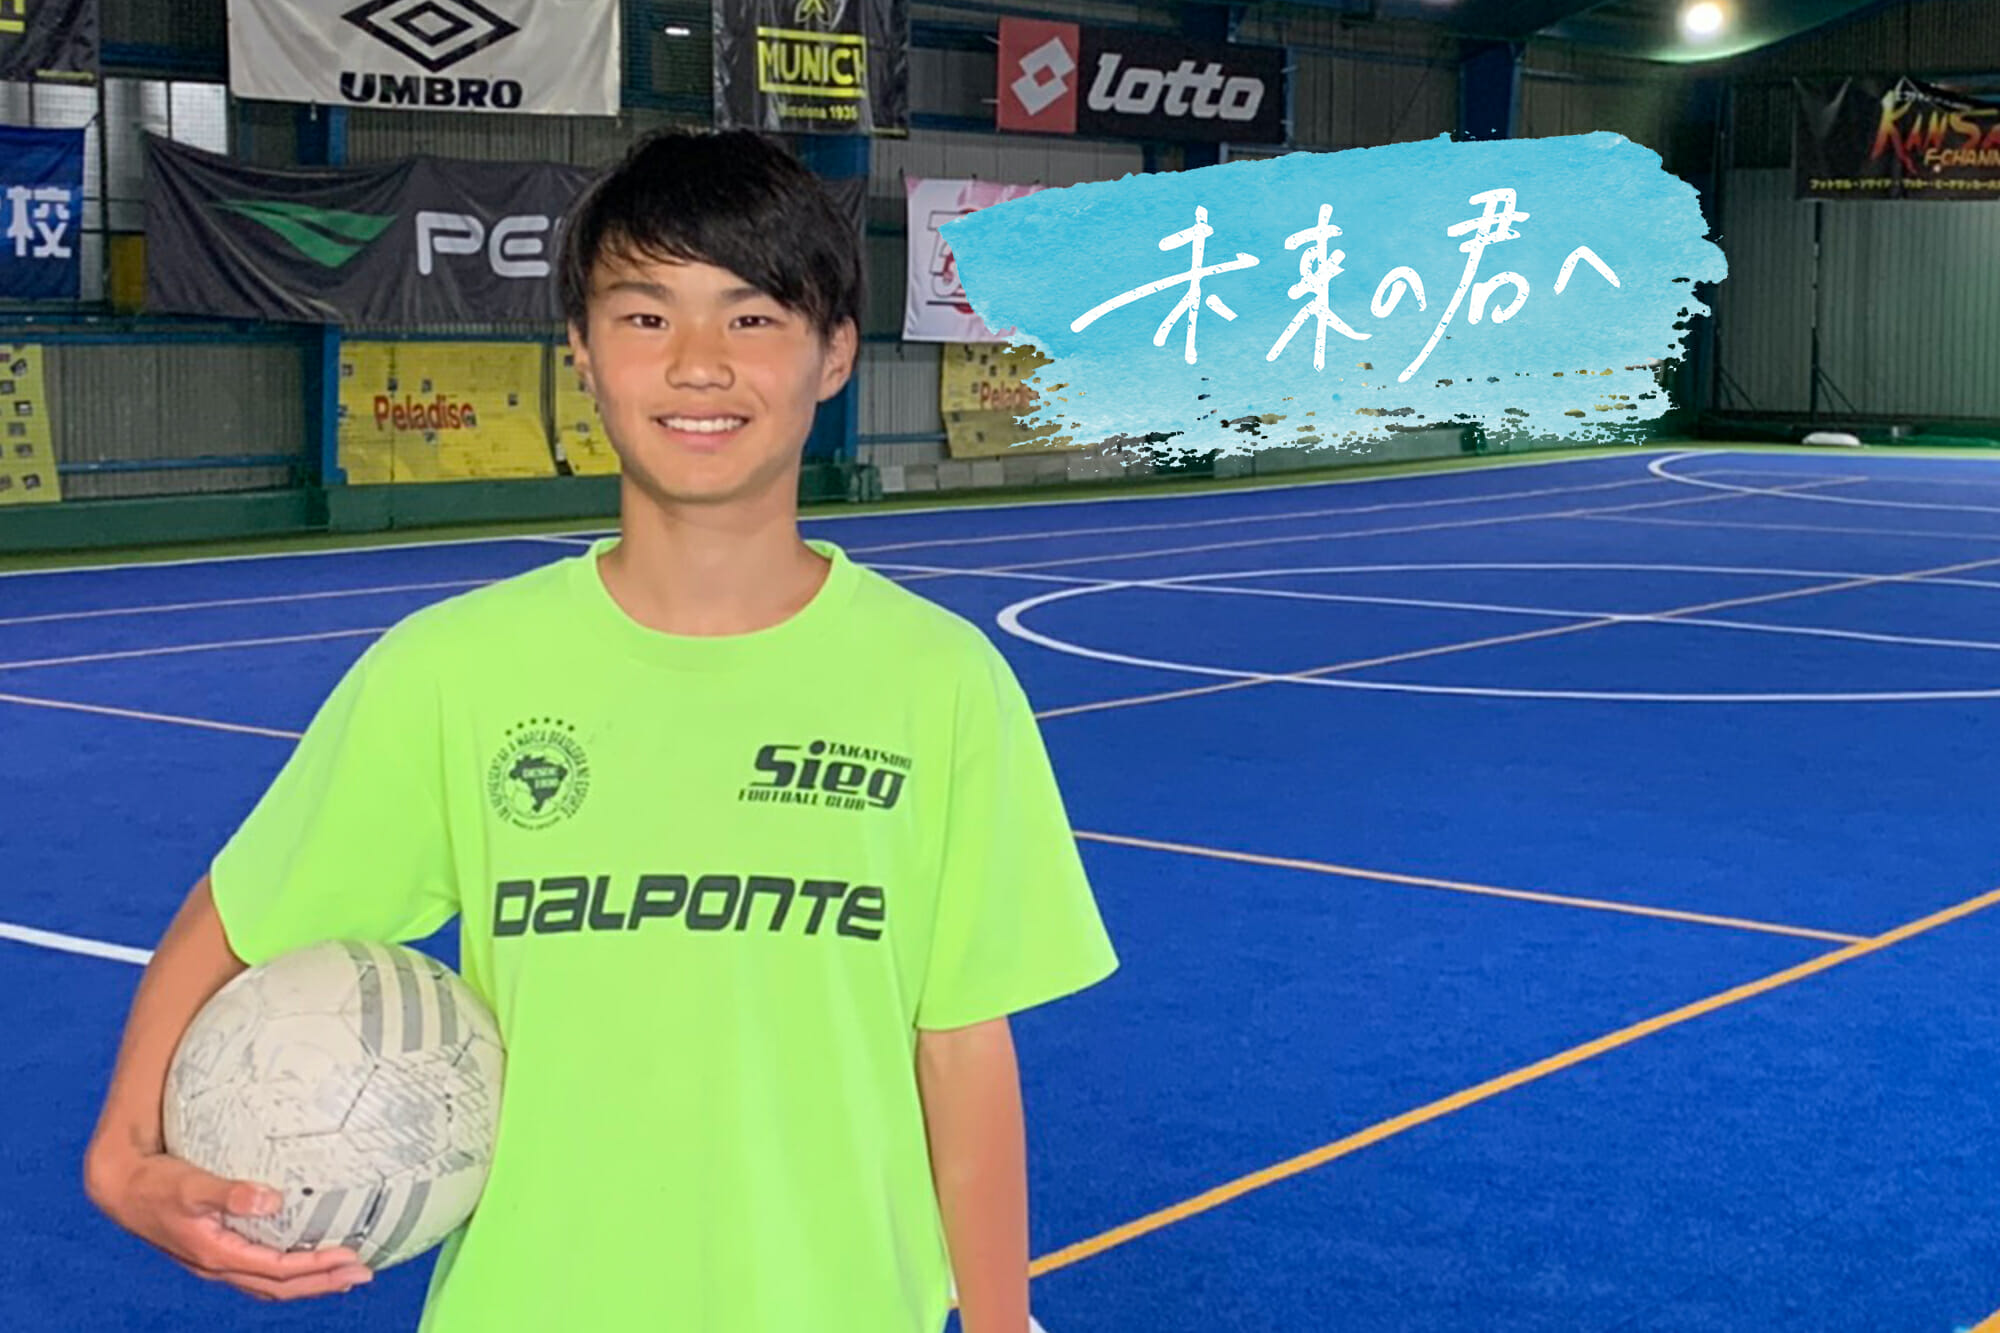 高槻ジーグ 大阪 田口裕真 中学3年生 Reibola 新しいサッカーメディア